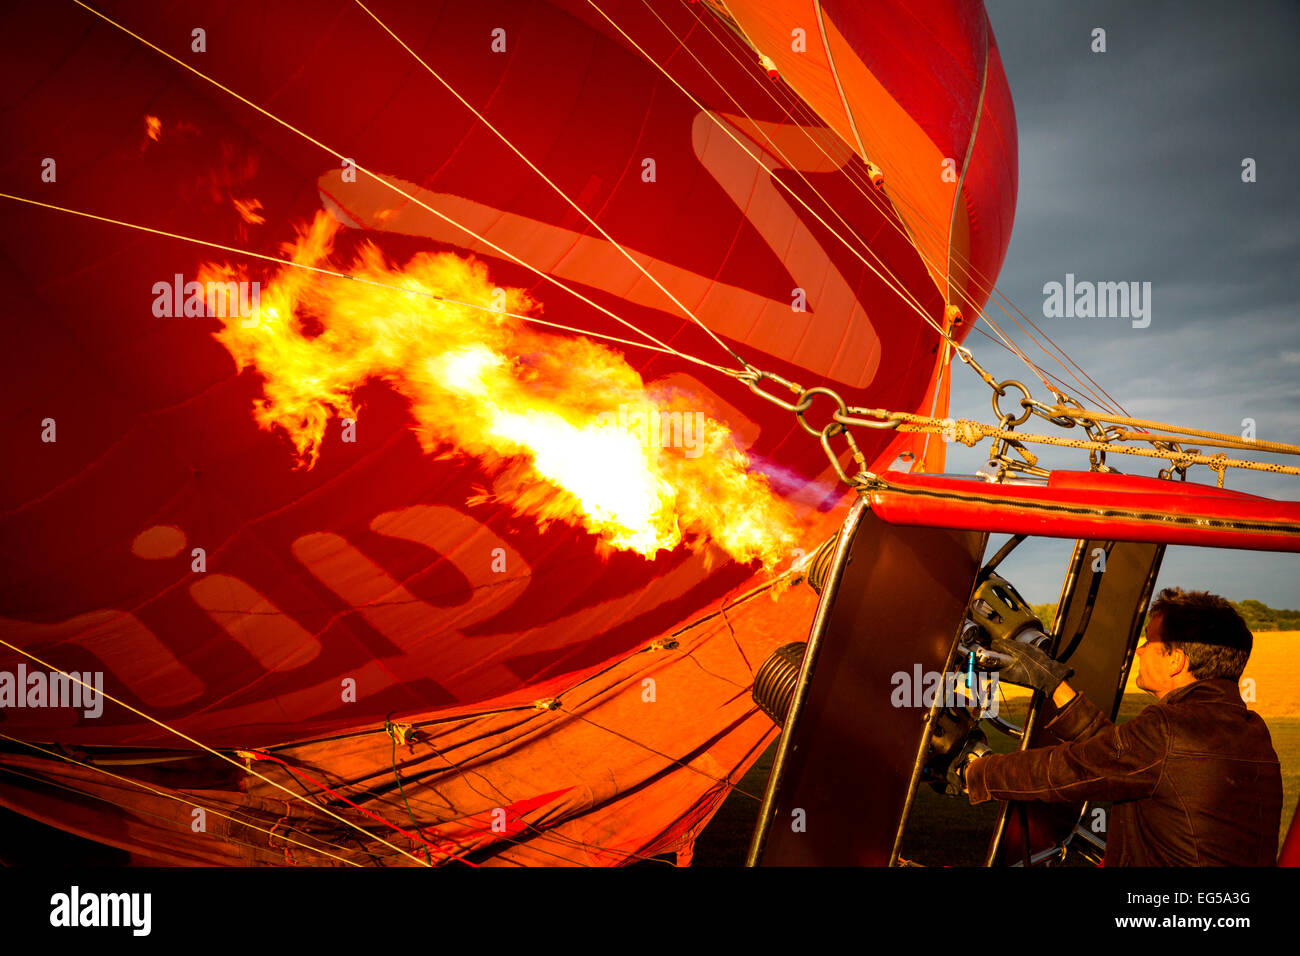 El hombre controla el quemador de gas las llamas rojas de inflar un globo de aire caliente, south oxfordshire, Inglaterra Foto de stock